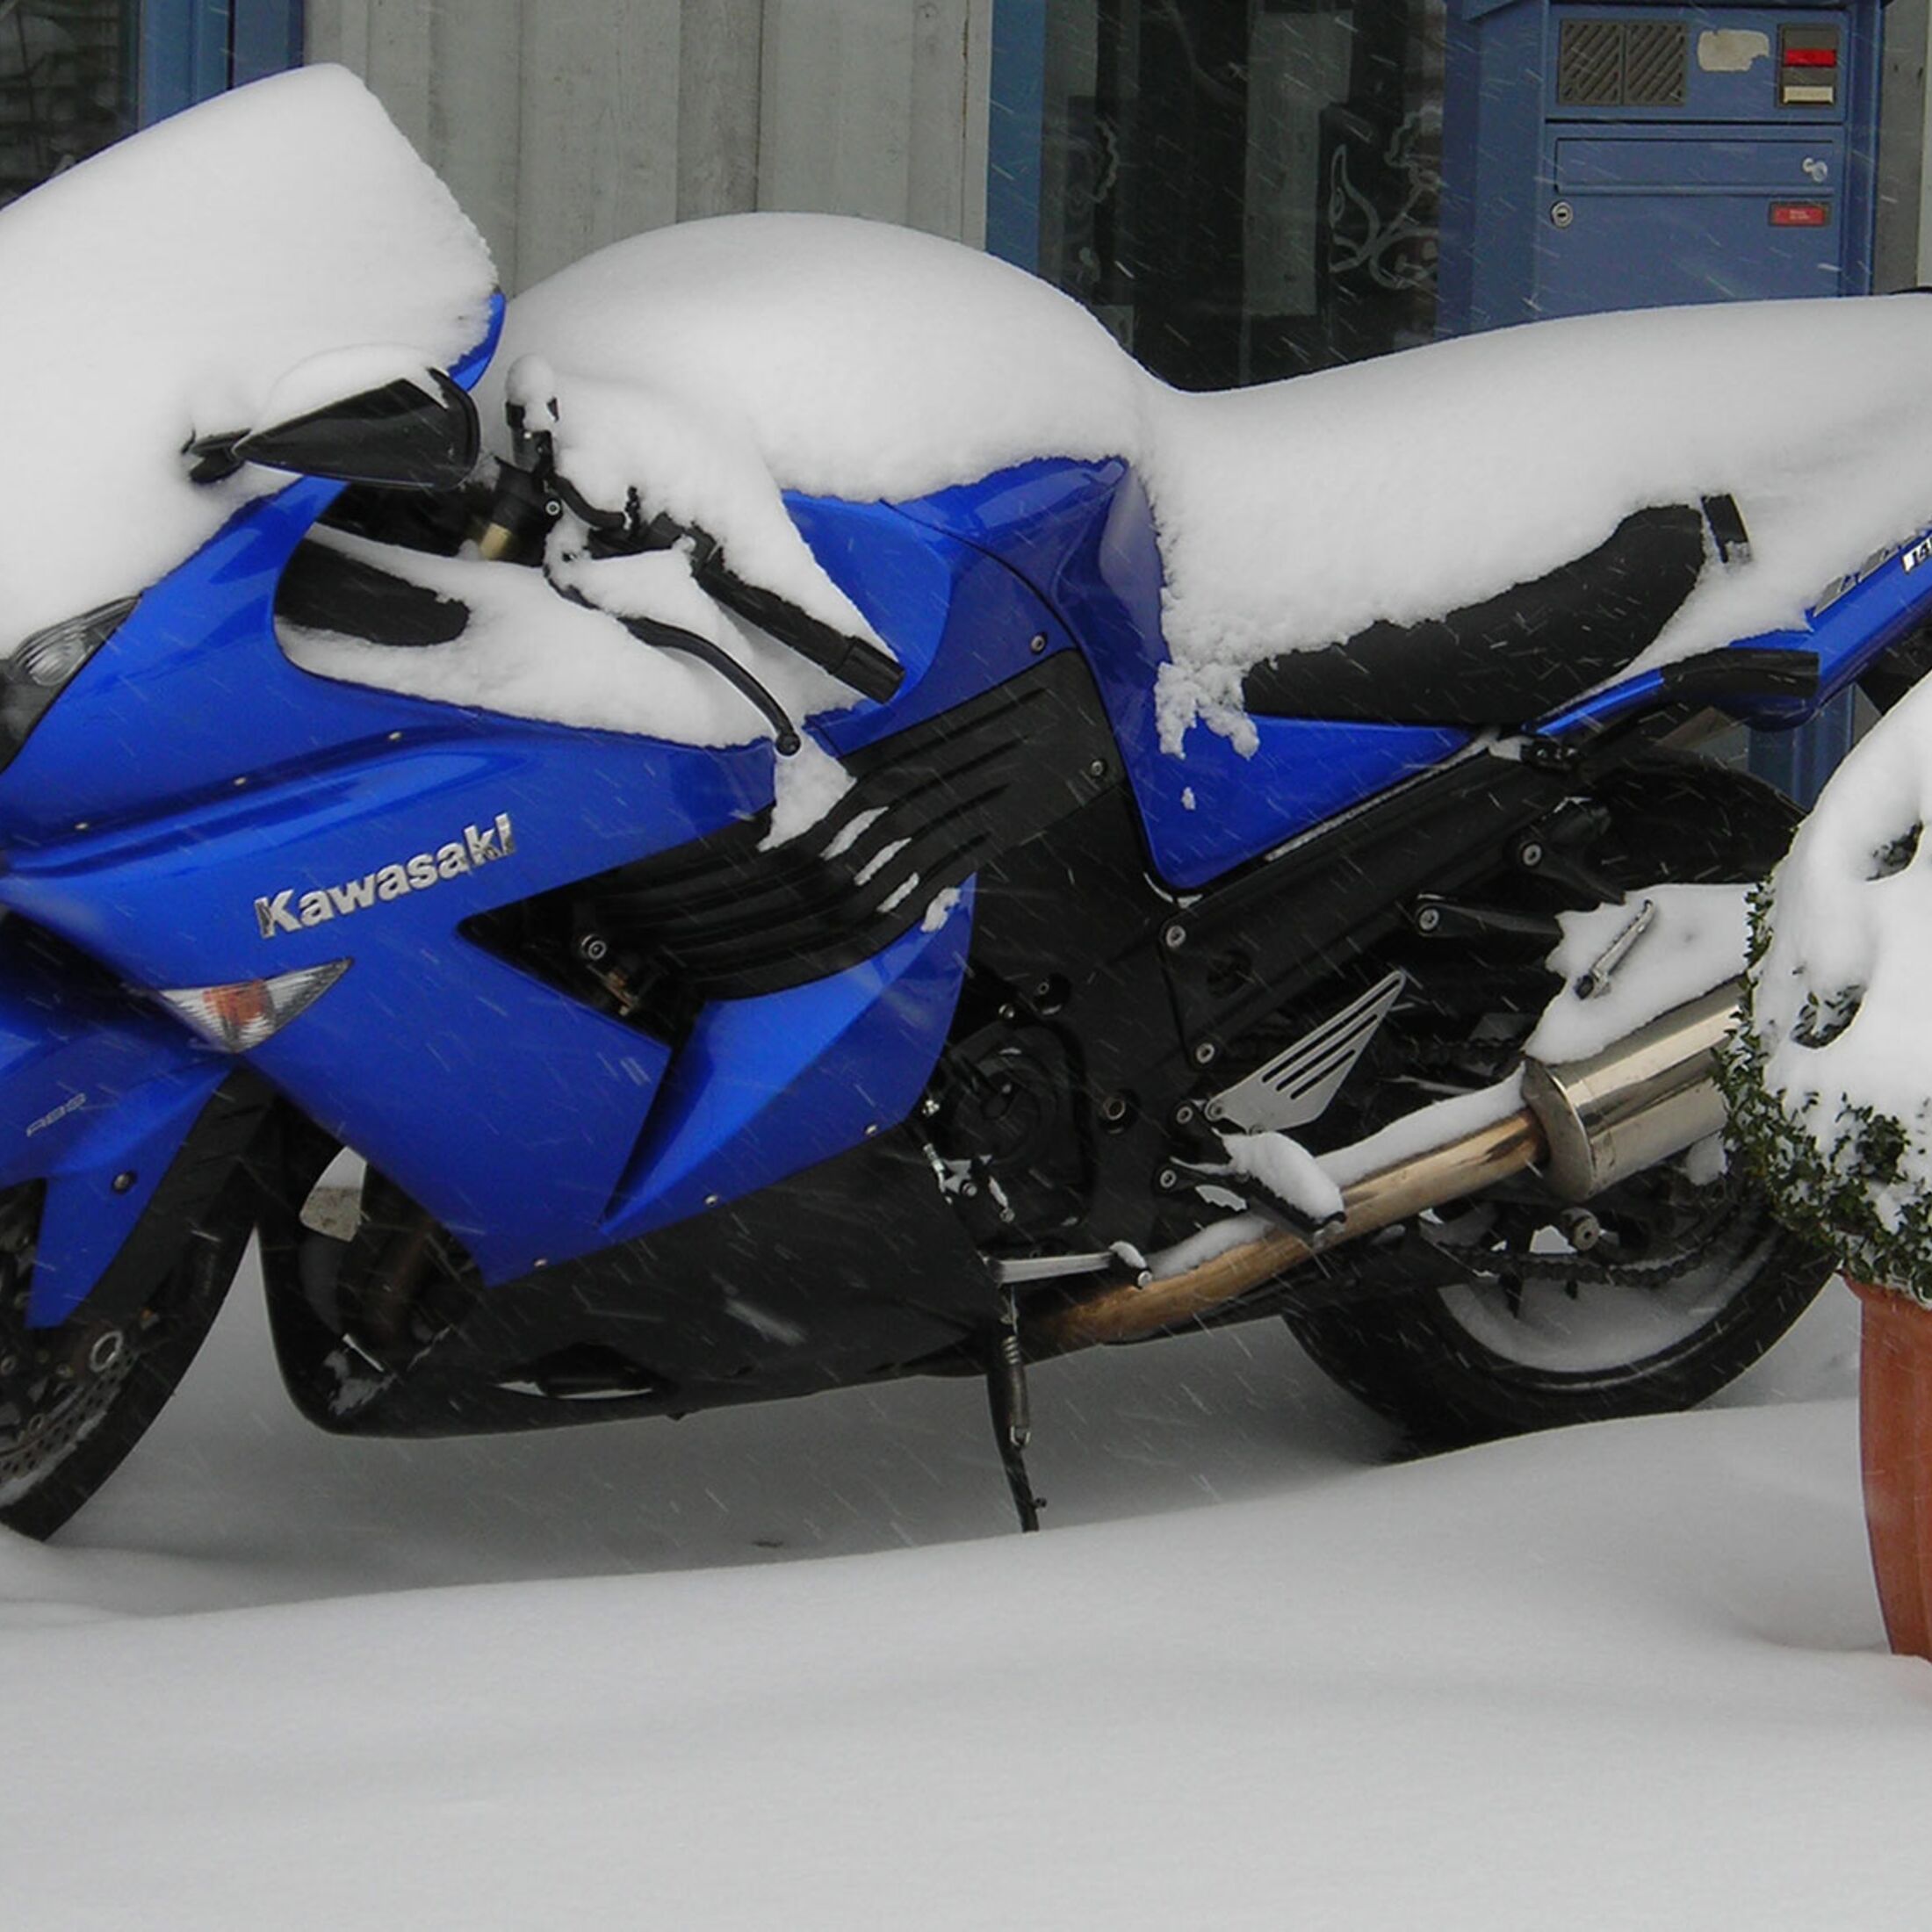 So bereitest du dein Motorrad für die Winterpause vor